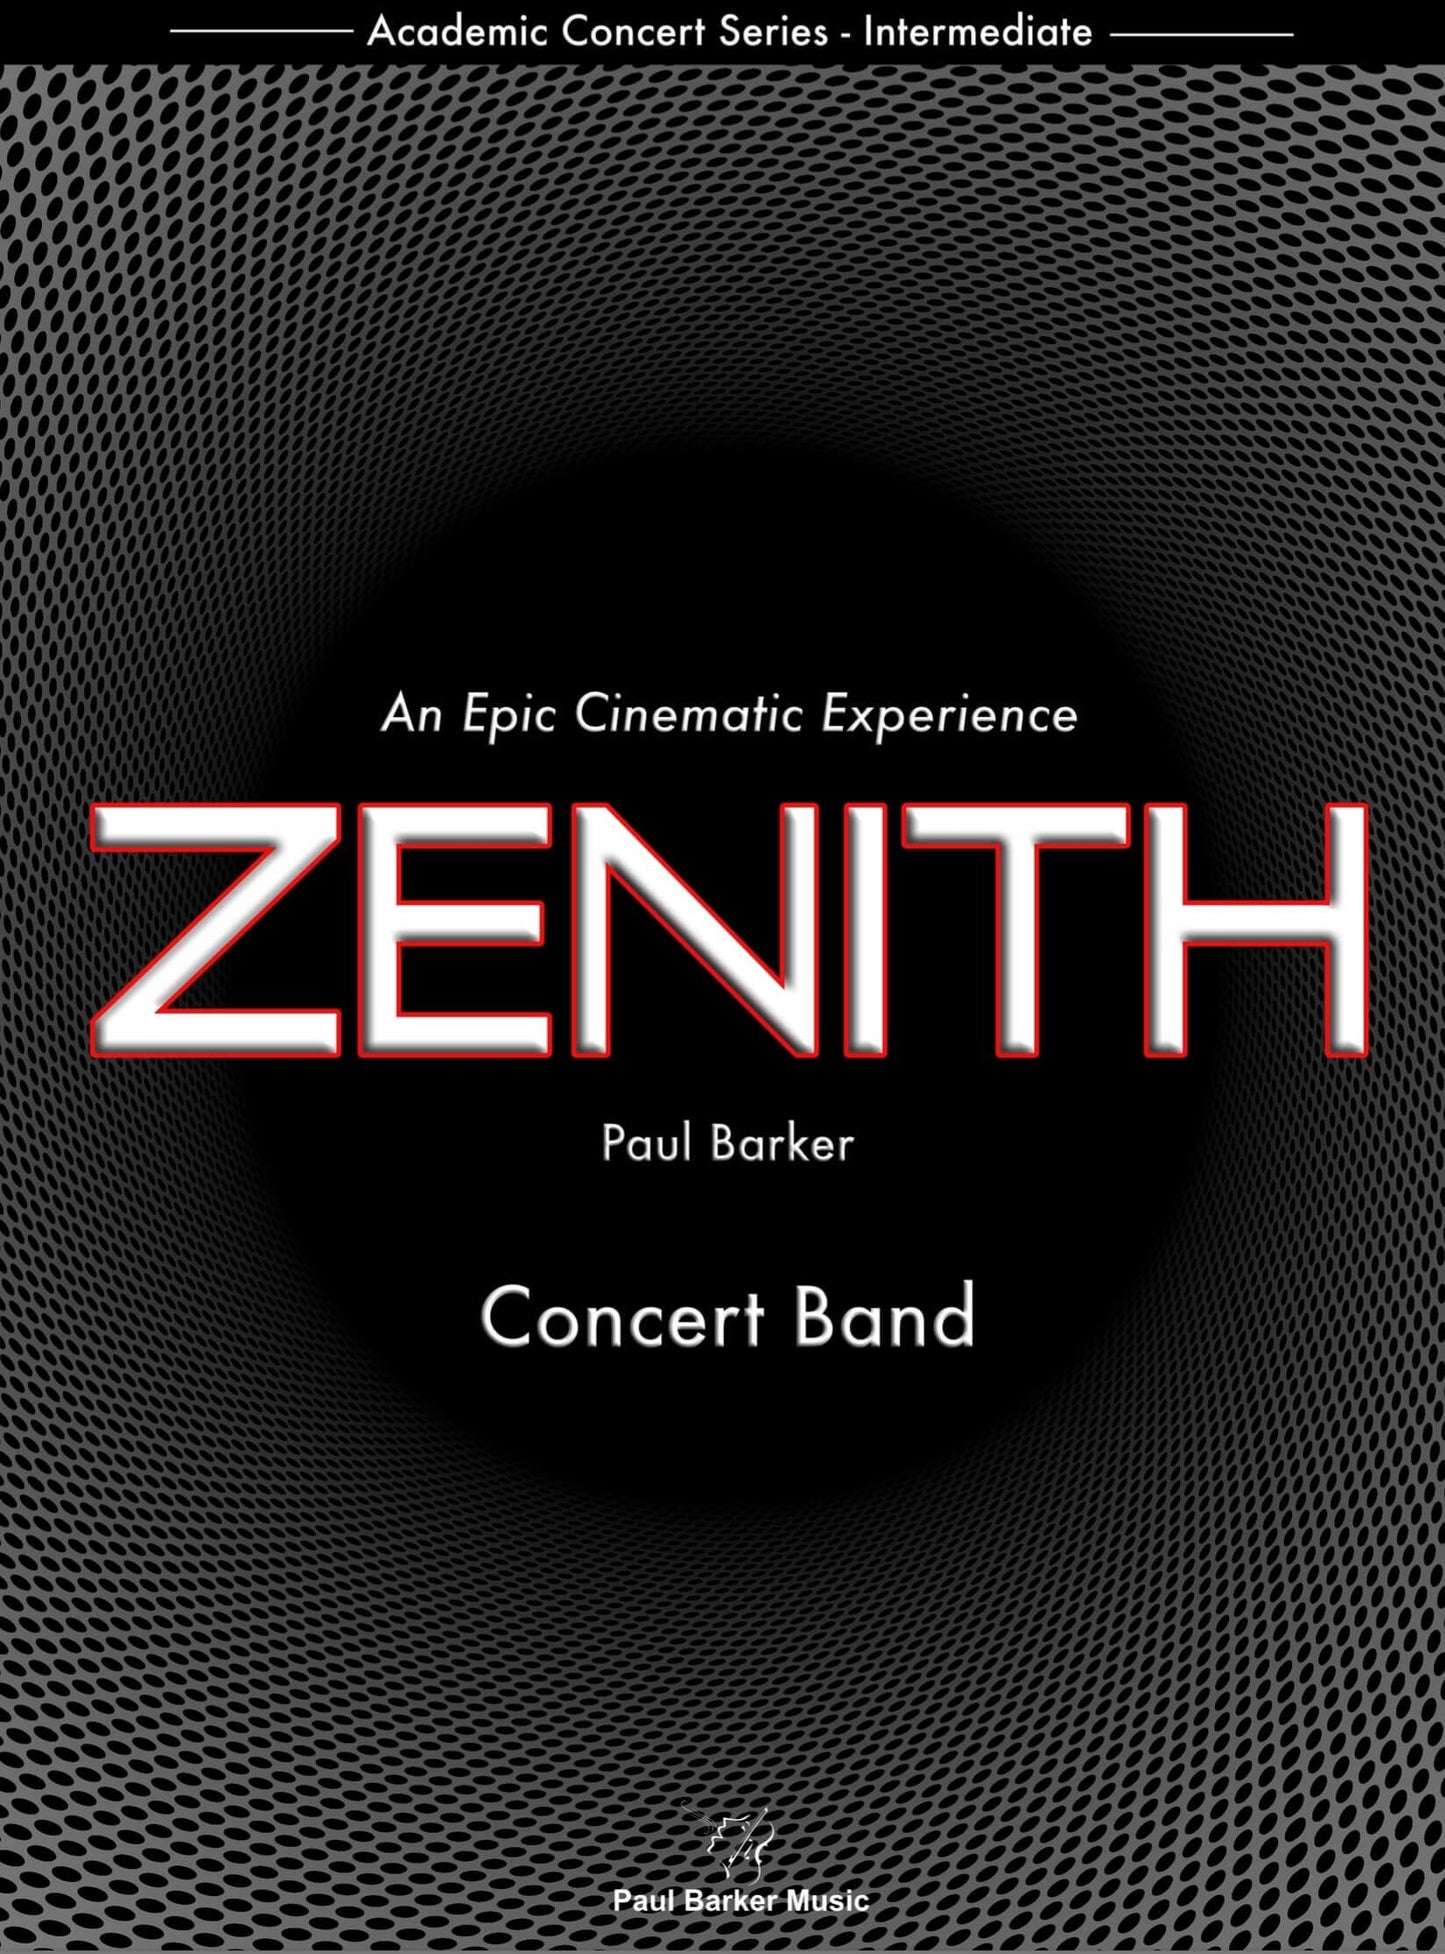 Zenith [Concert Band] - Paul Barker Music 